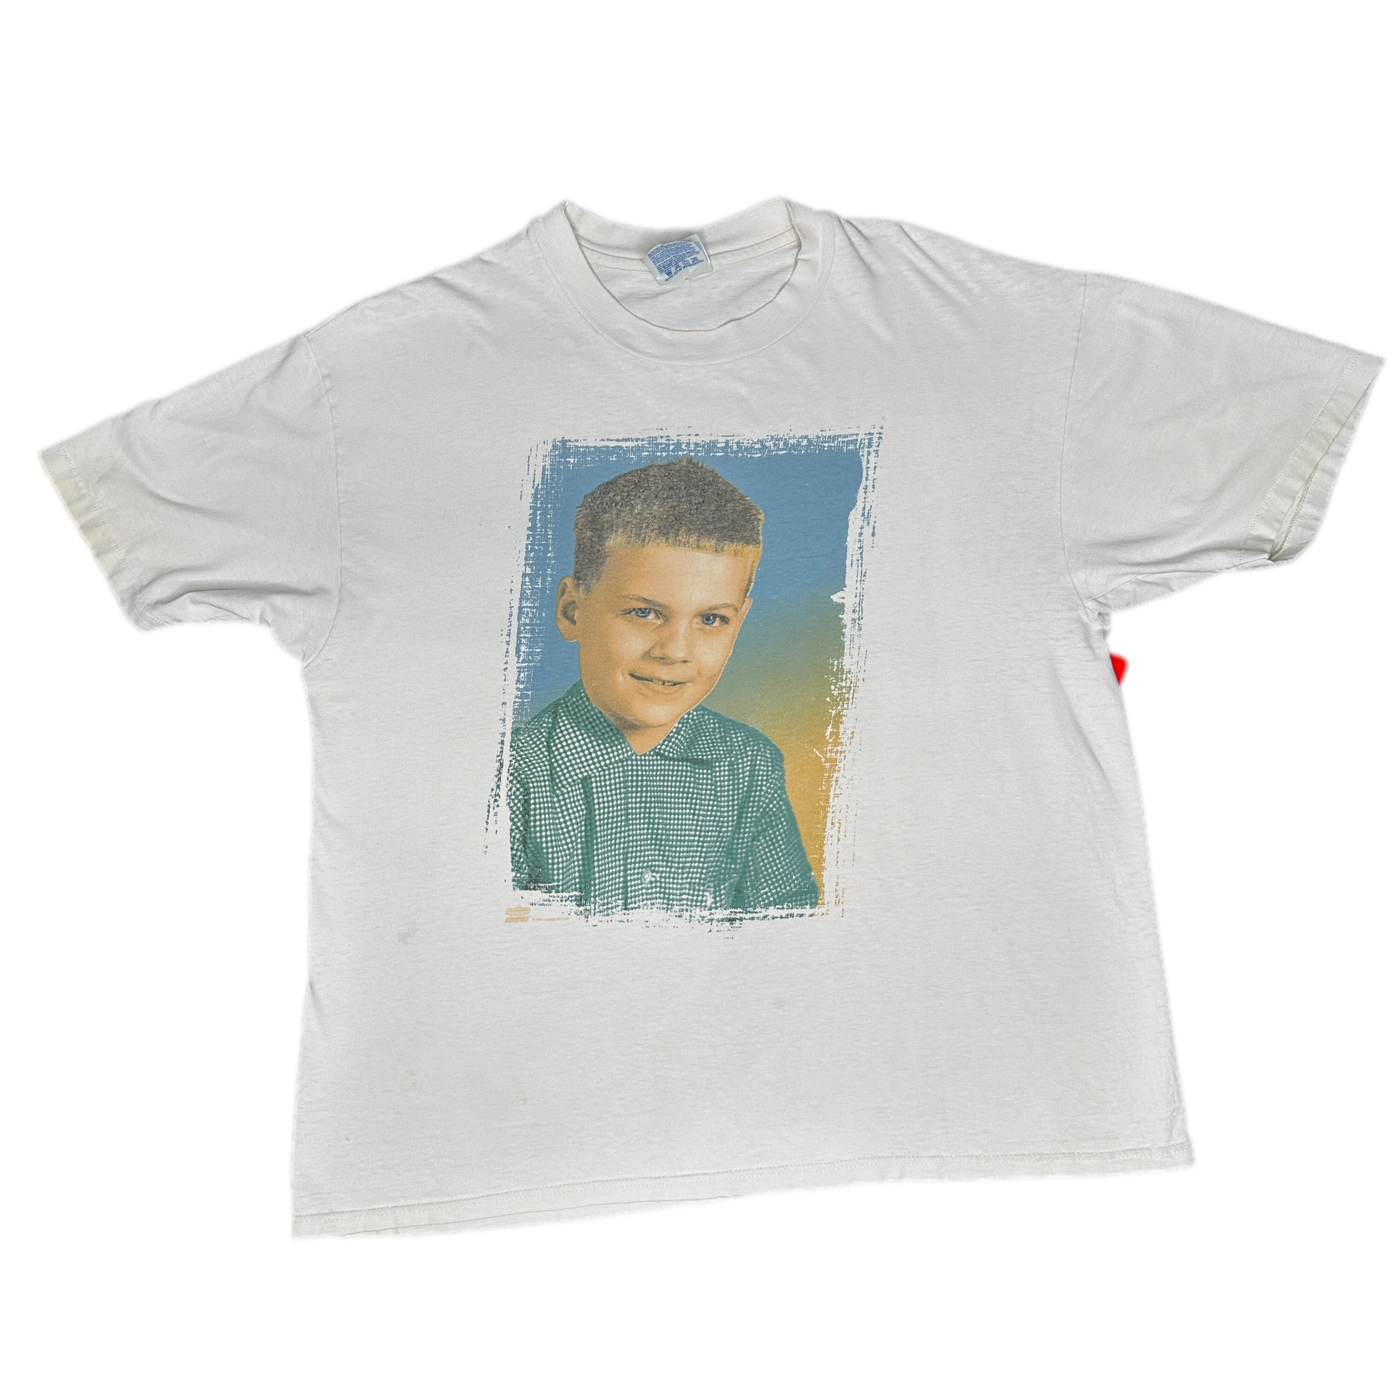 '94 James Taylor Tour Baby Picture Photo Portrait T-shirt sz XL